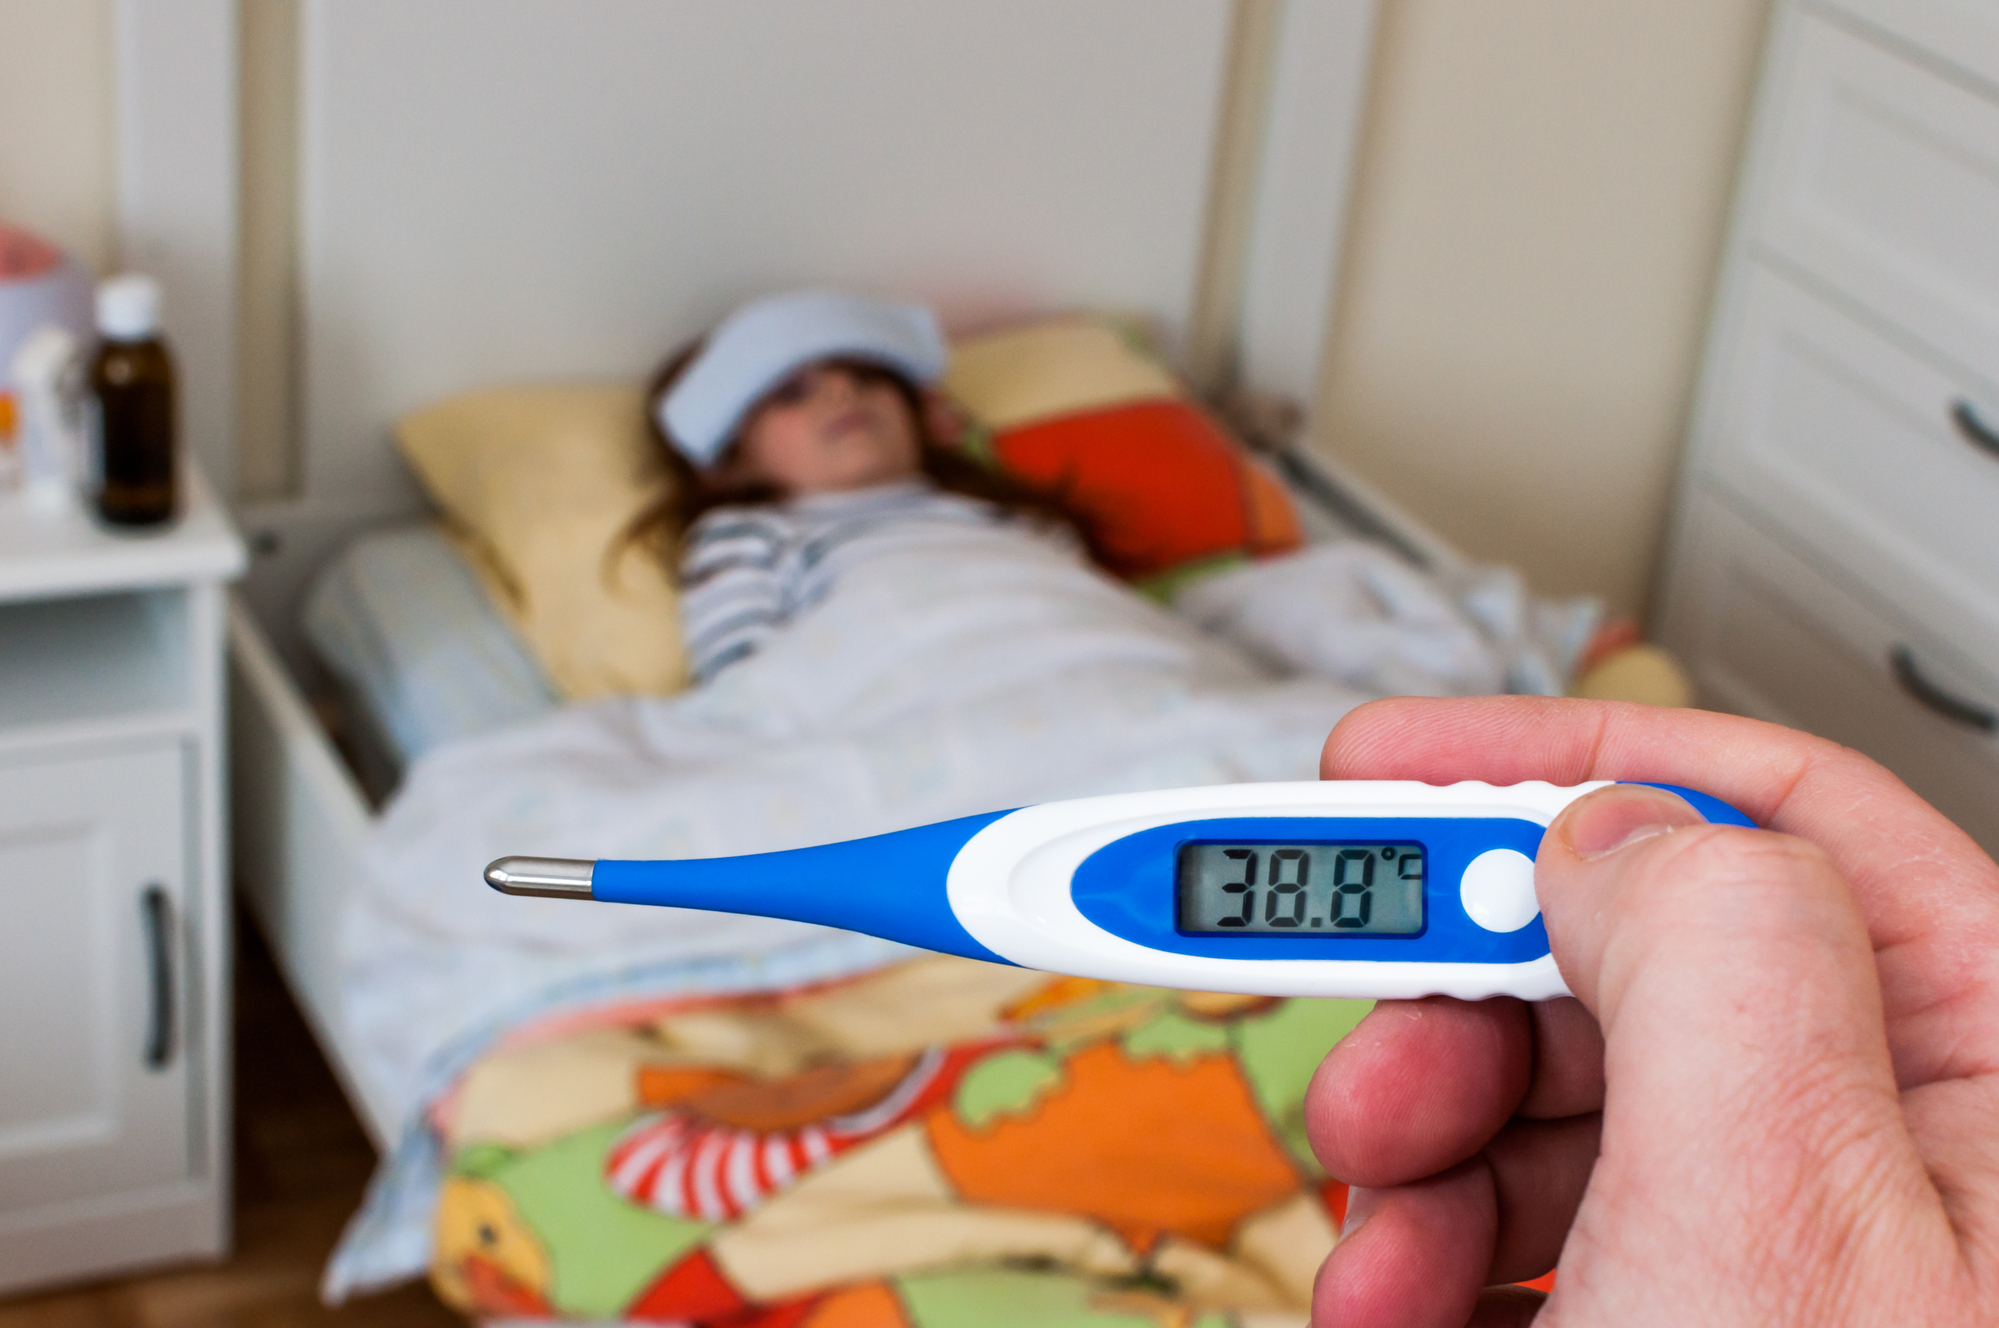 Повышенная температура у ребенка, будить ли ночью? Мнение Комаровского